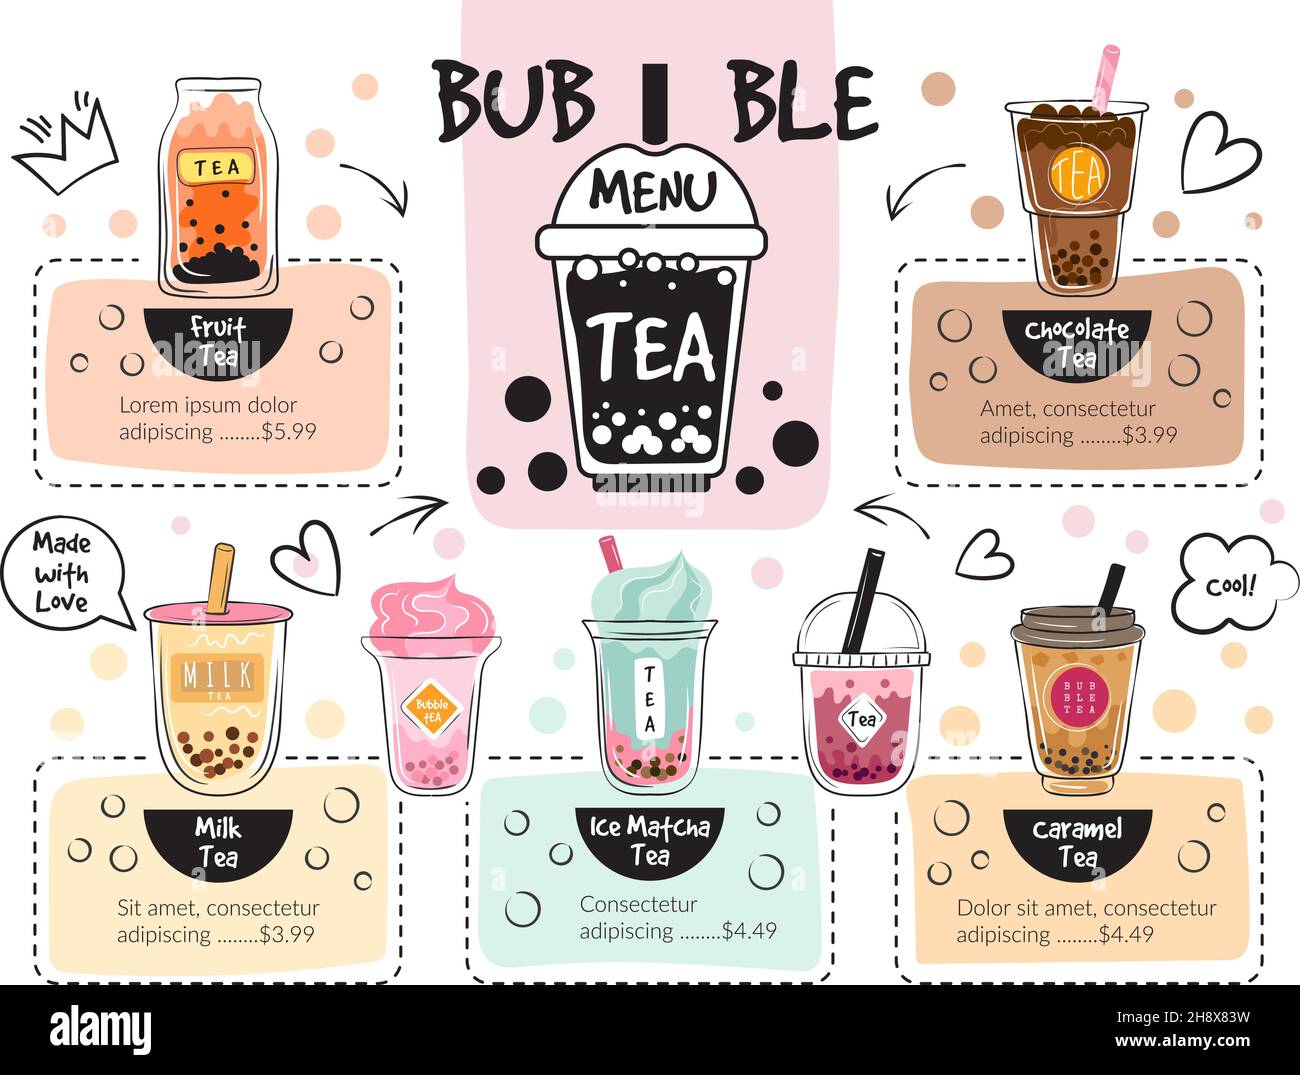 Bubble Tea-Menü. Caffe köstliche Getränke jüngsten Vektor-Restaurant-Menü Stock Vektor